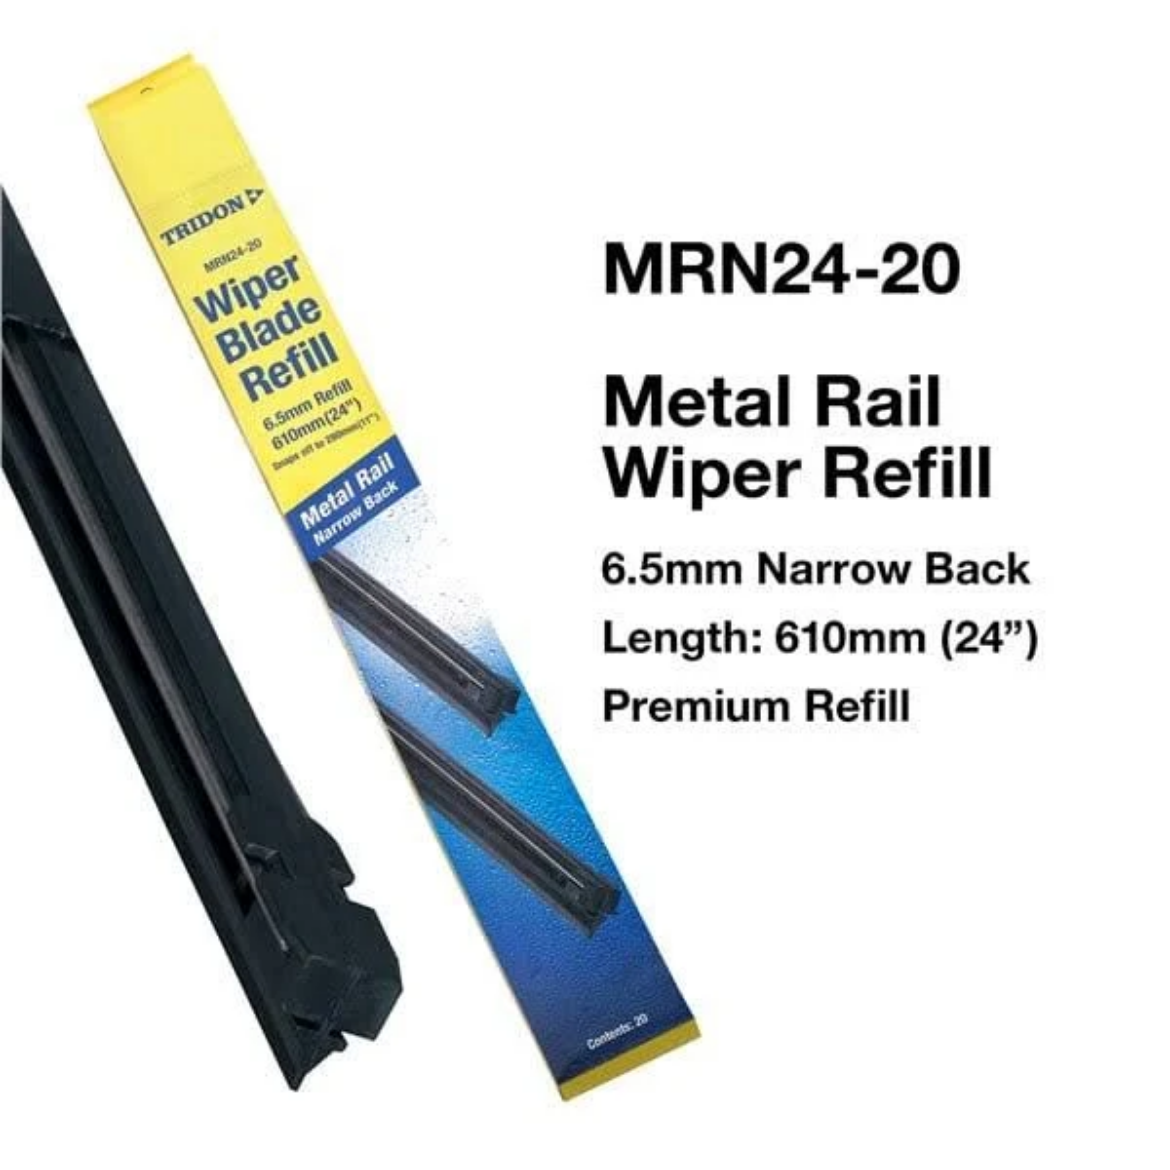 Picture of WIPER REFILL METAL RAIL - NARROW BACK 6.5MM X 610MM (24") Pkt.20